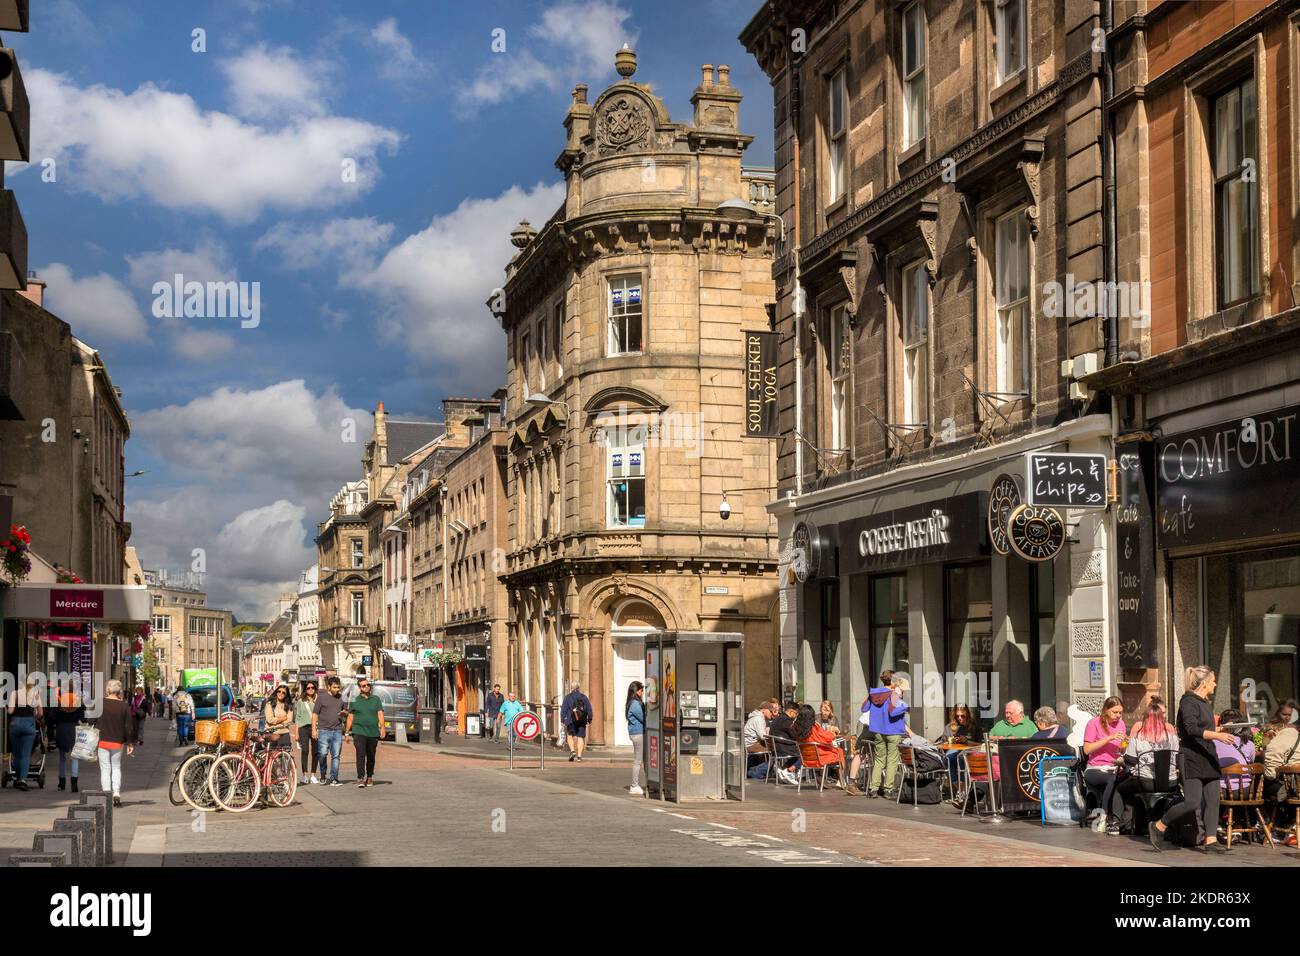 5 septembre 2022 : Inverness, Highland, Écosse - rue animée dans Church Street, Inverness, avec café en bord de trottoir, magasins, foule de gens. Banque D'Images